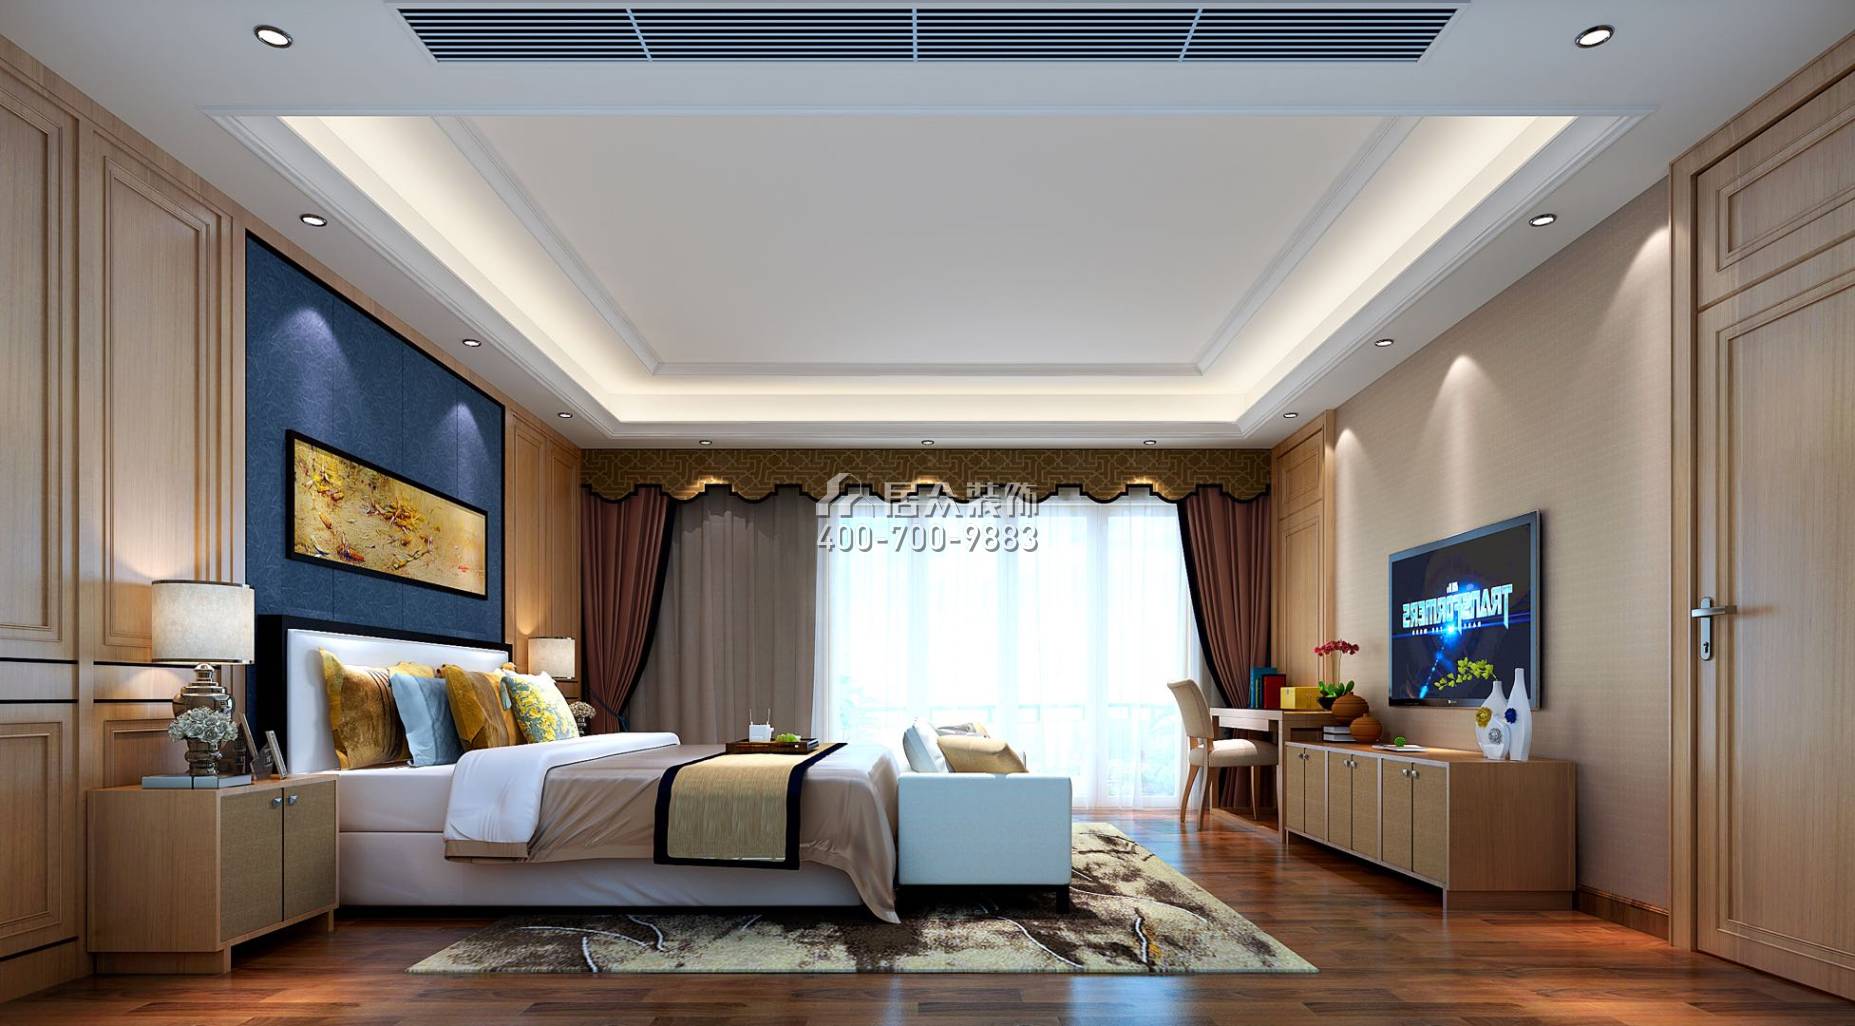 中信水岸城226平方米中式风格平层户型卧室装修效果图